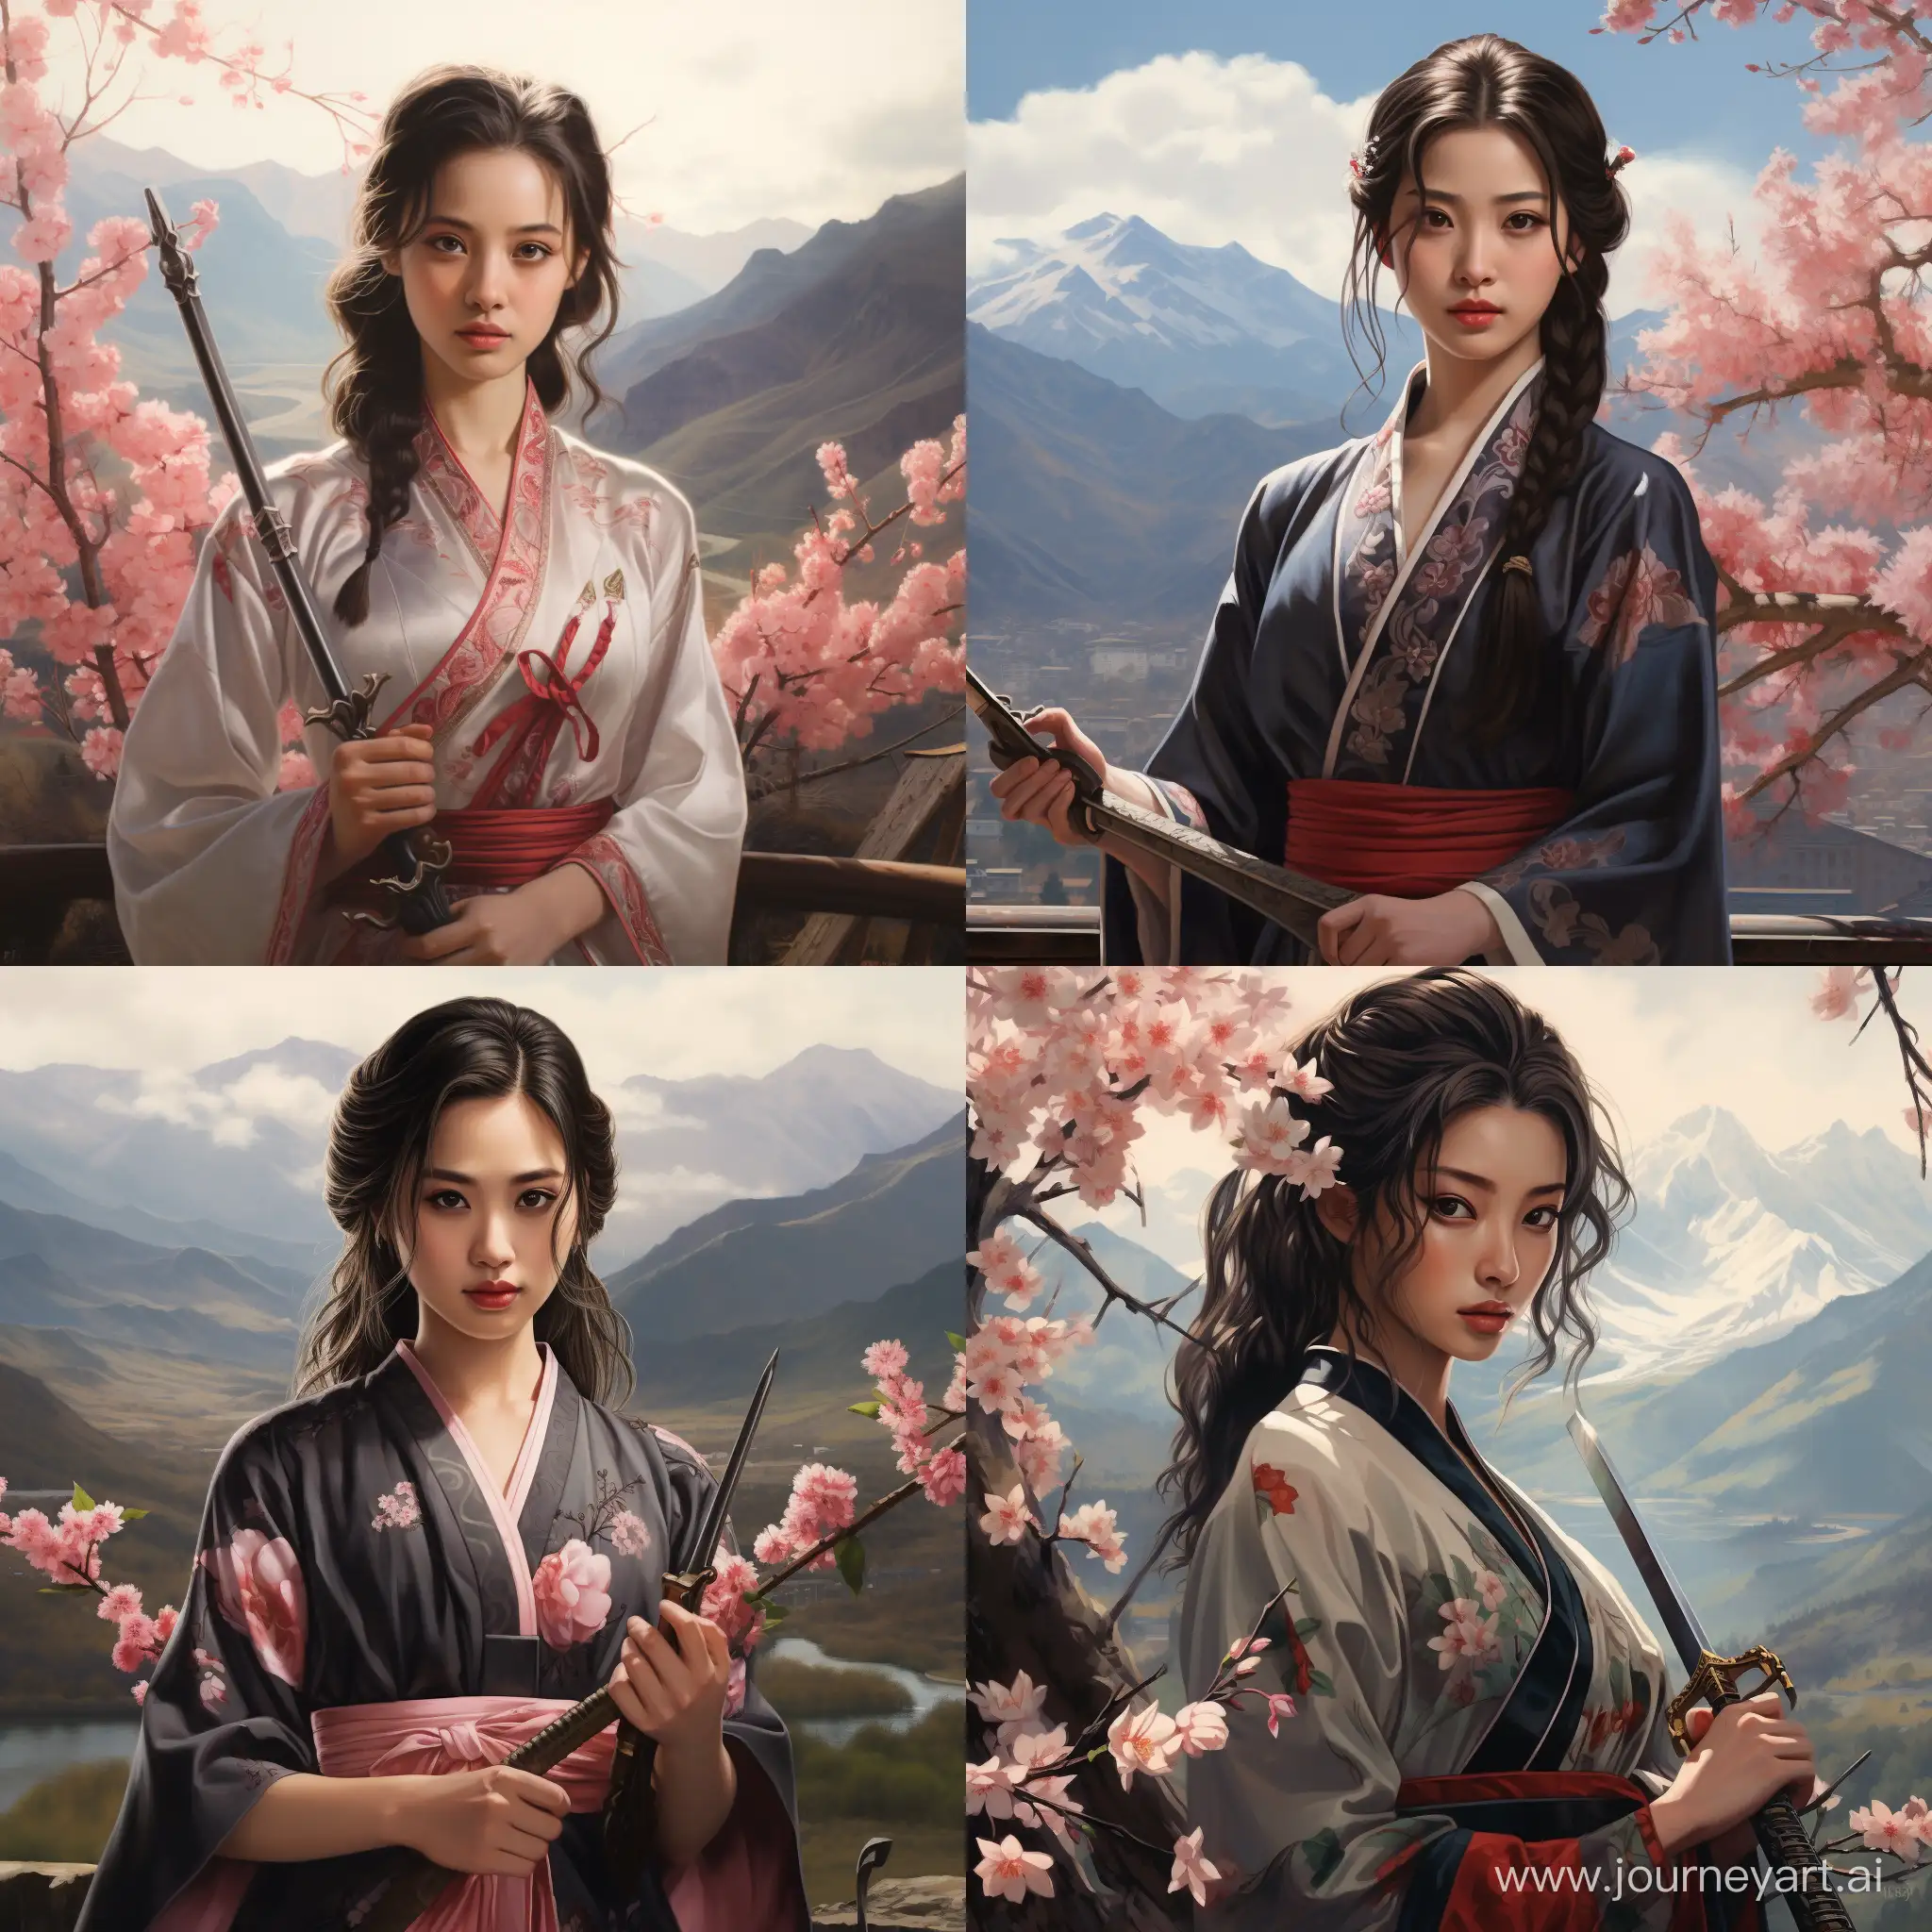 Девушка в традиционном китайском наряде на фоне гор и цветущей сакуры вонзает кинжал себе в серце